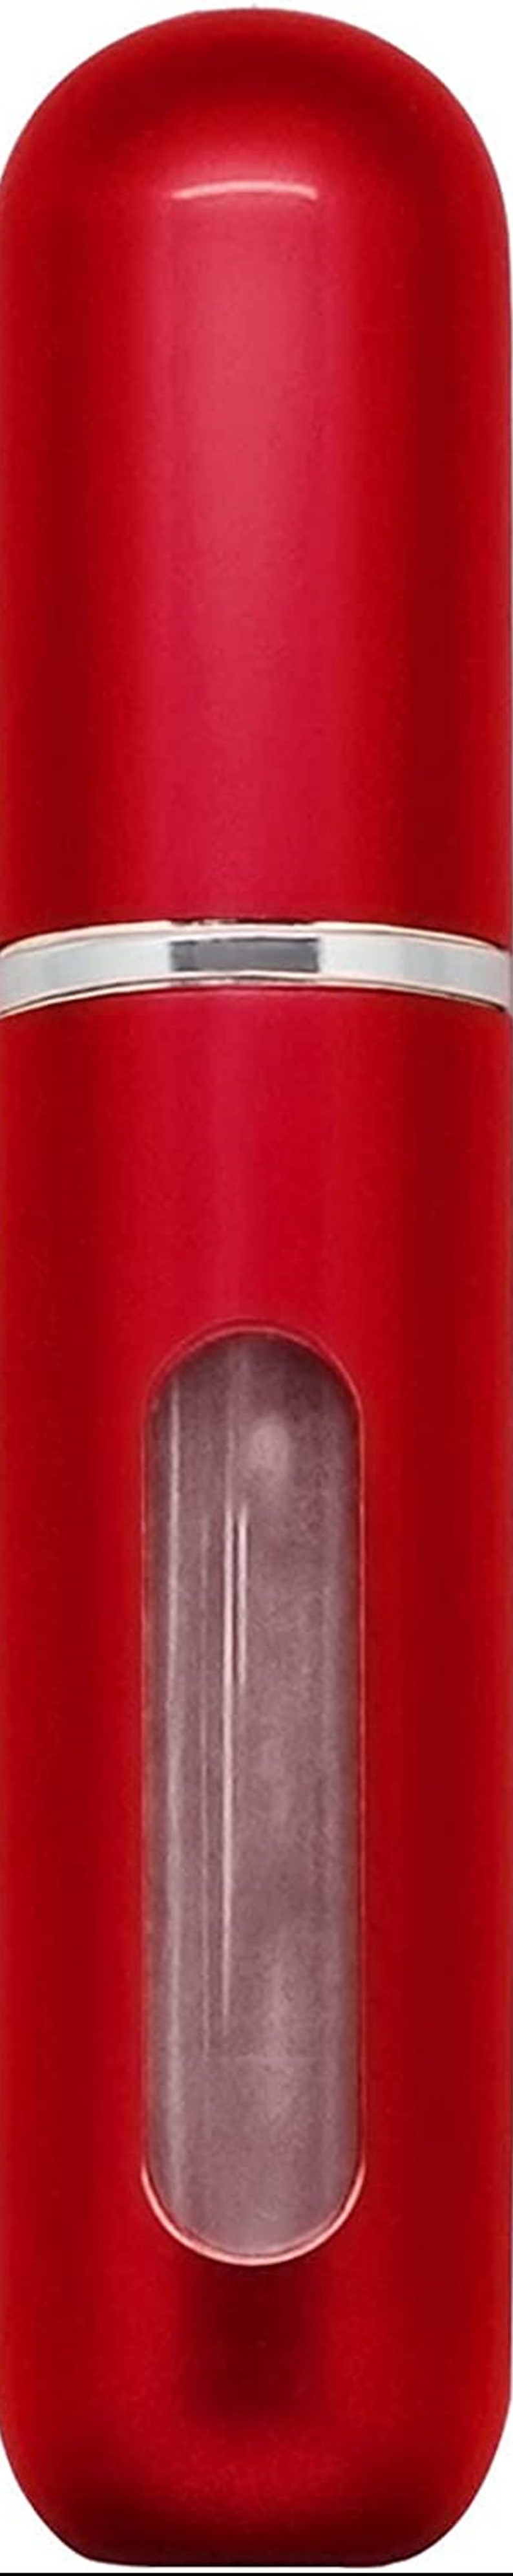 Nachfüllbare Parfüm Aftershave Zerstäuber 5 ml Spray Pump Portable Flaschen Ideal für die Reise Kann BLACK & GOLD Personalisiert werden Bild 8